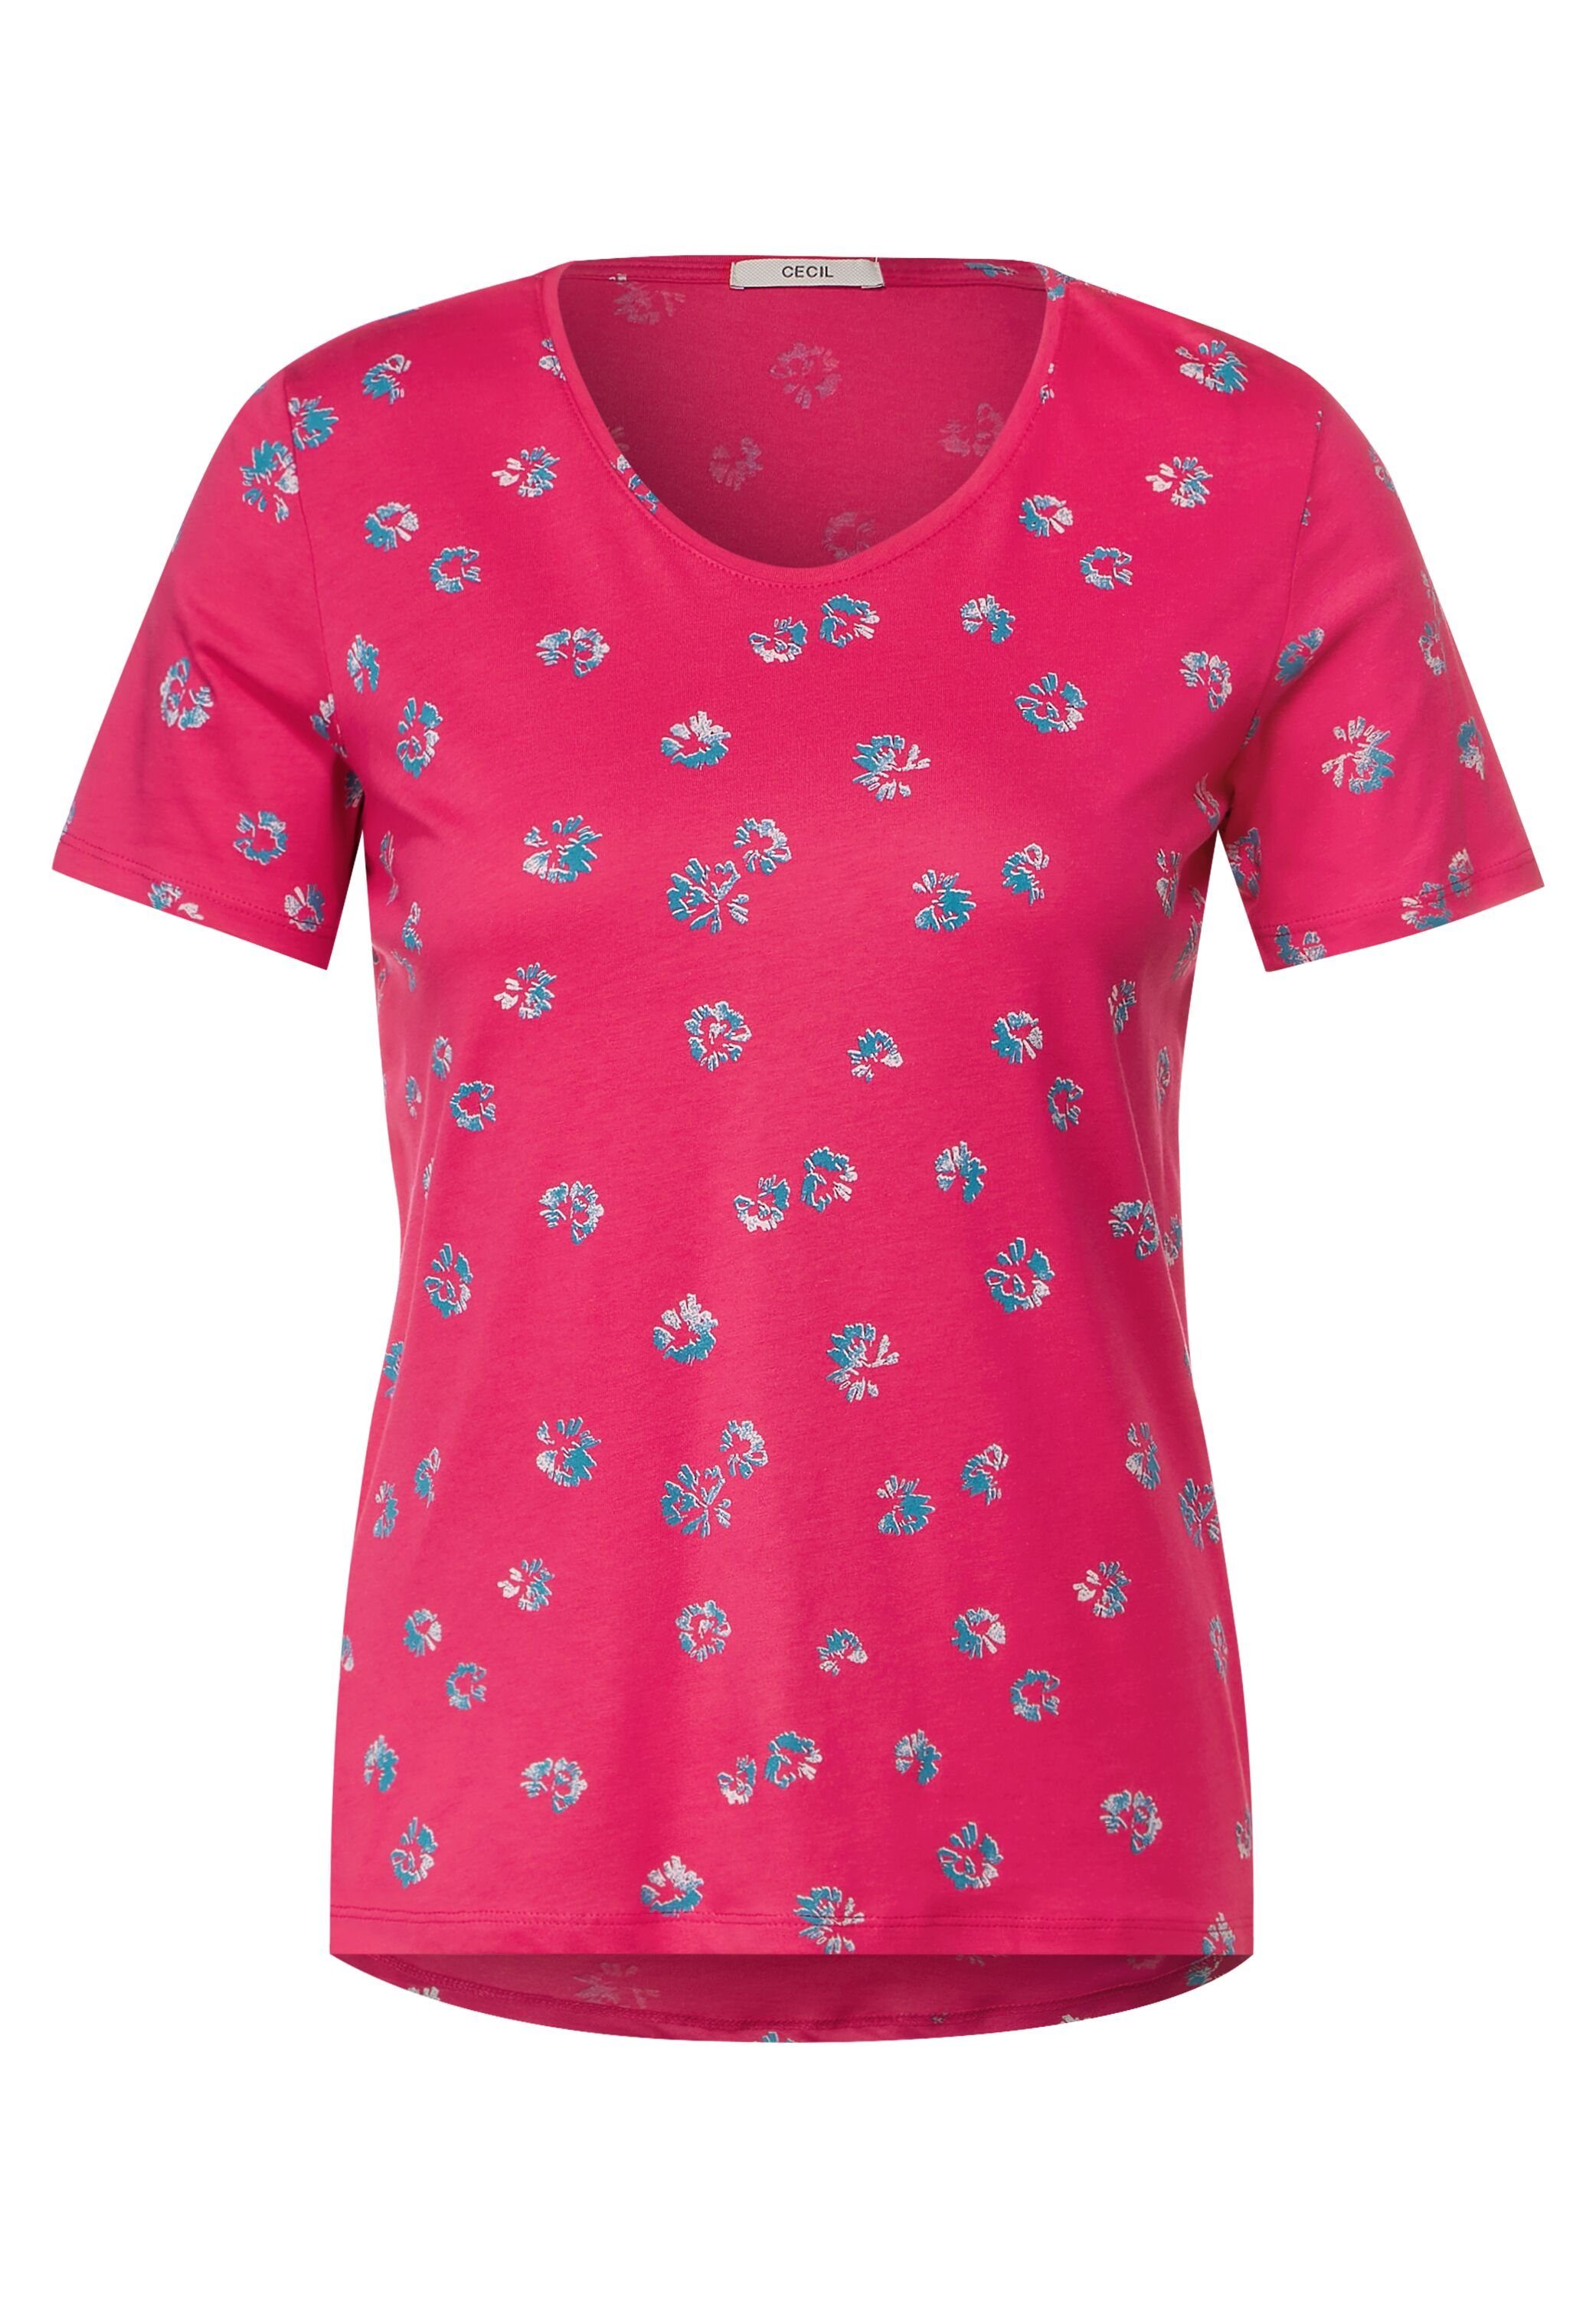 Materialmix Cecil aus pink fresh T-Shirt softem